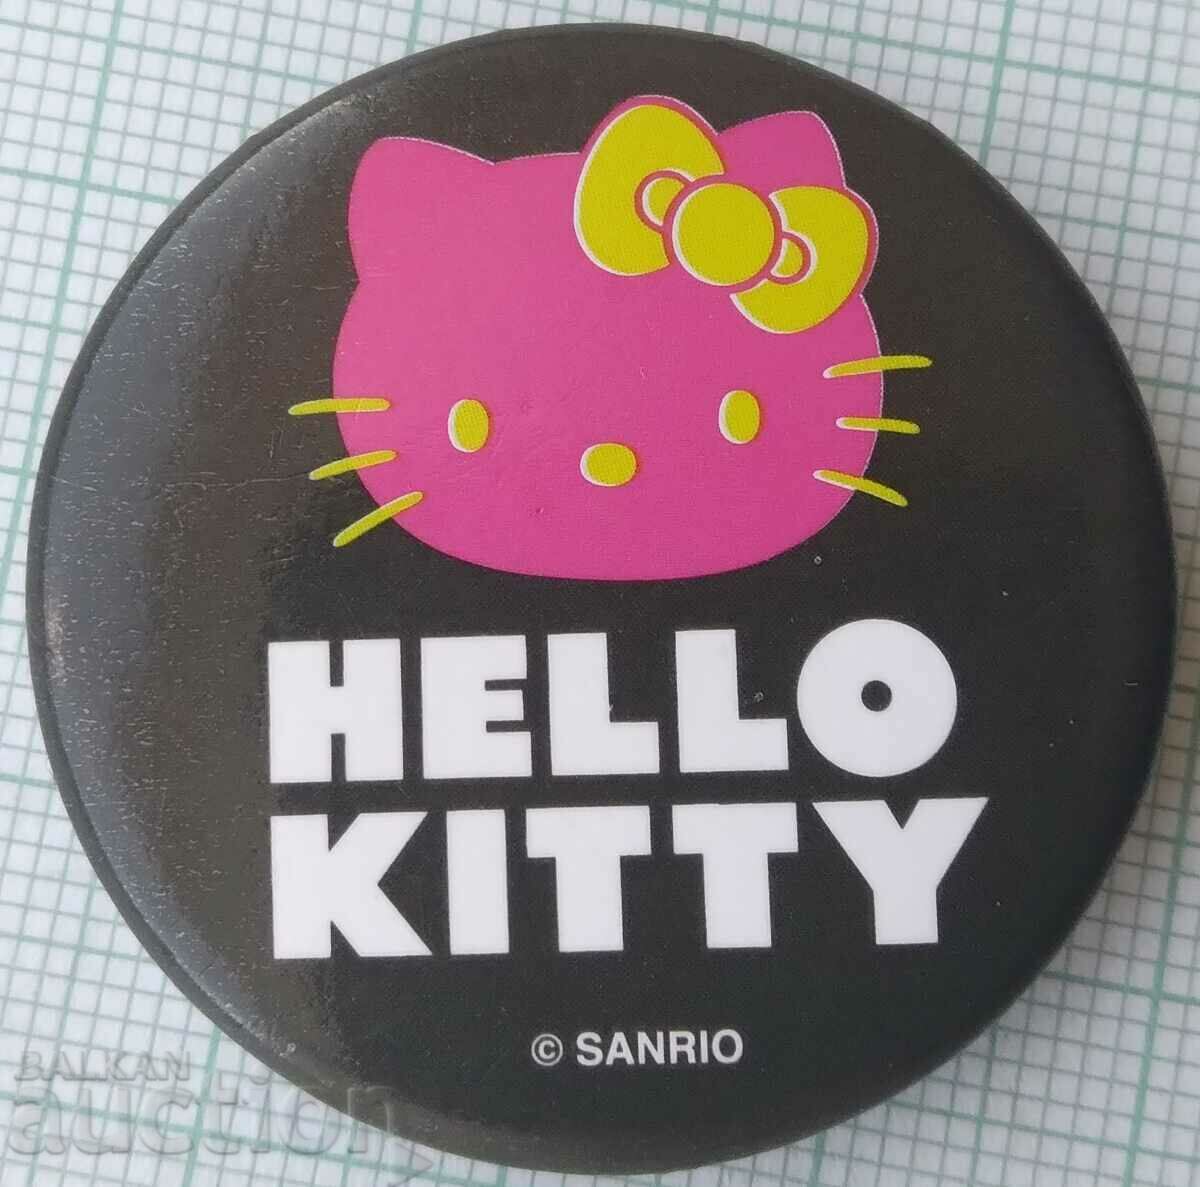 14612 Insigna - Hello Kitty